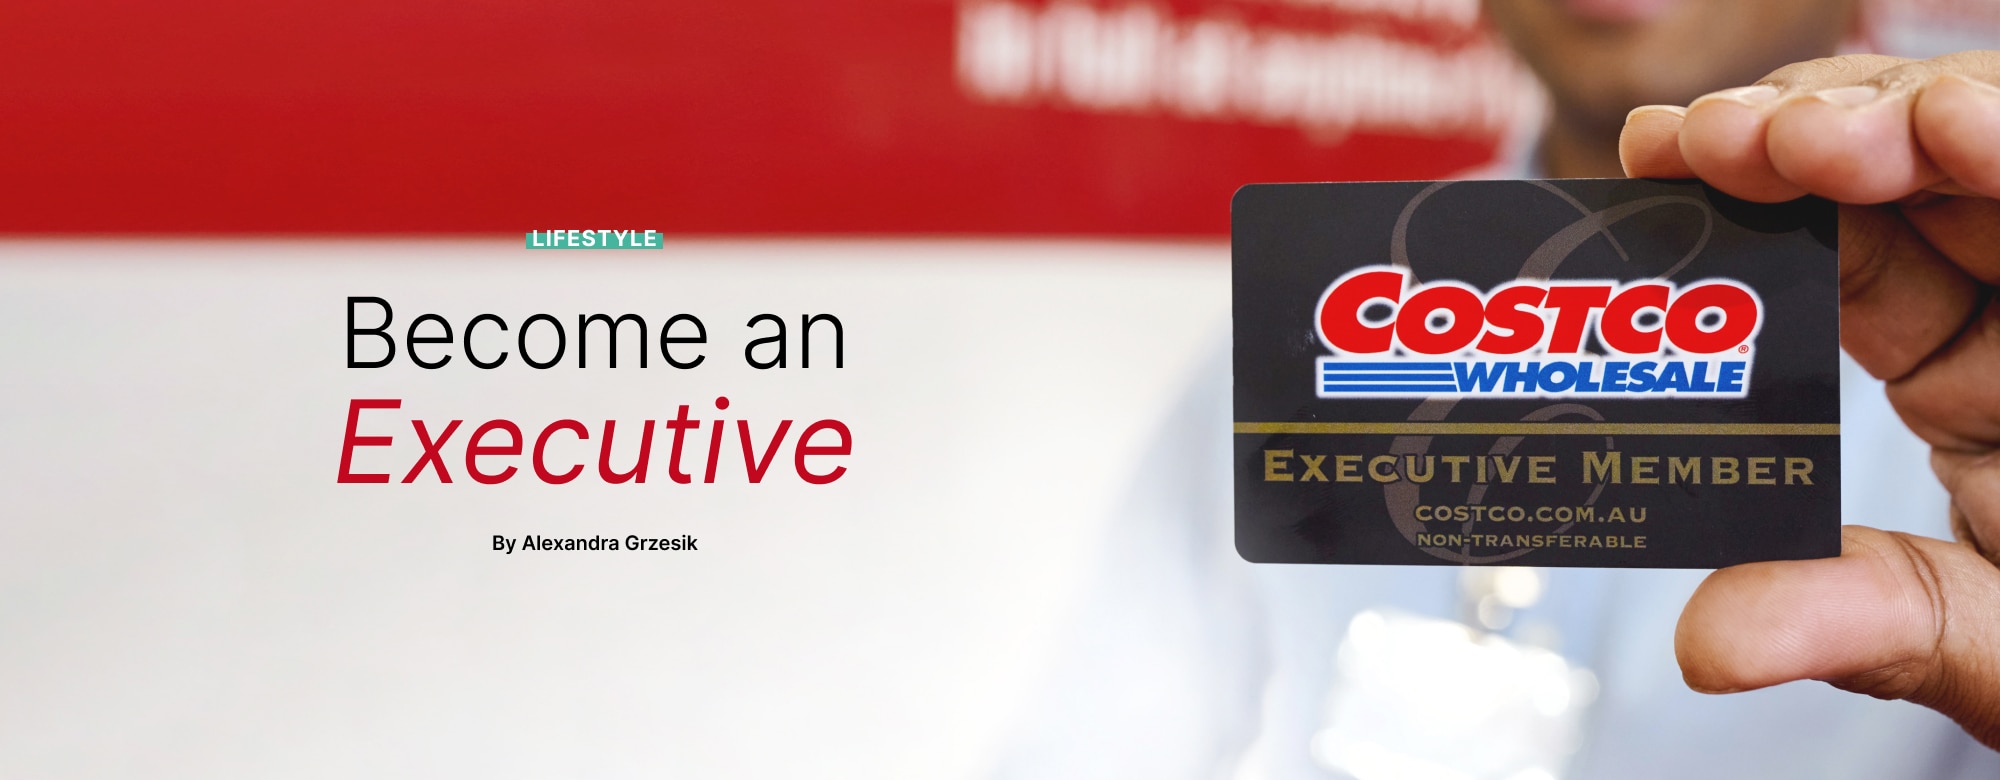 Become an Executive